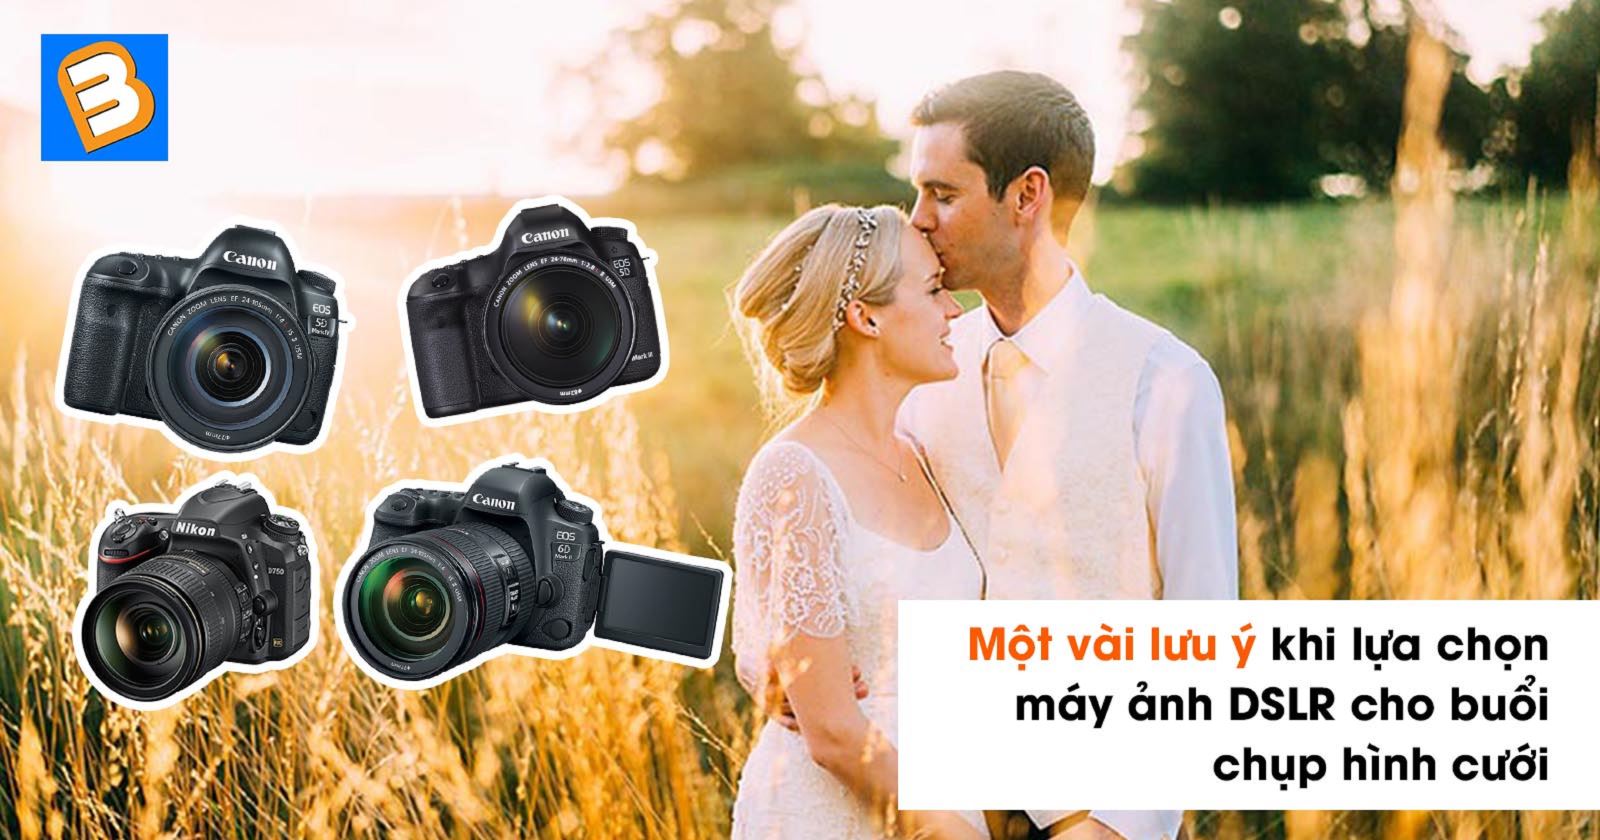 Một vài lưu ý khi lựa chọn máy ảnh DSLR cho buổi chụp hình cưới